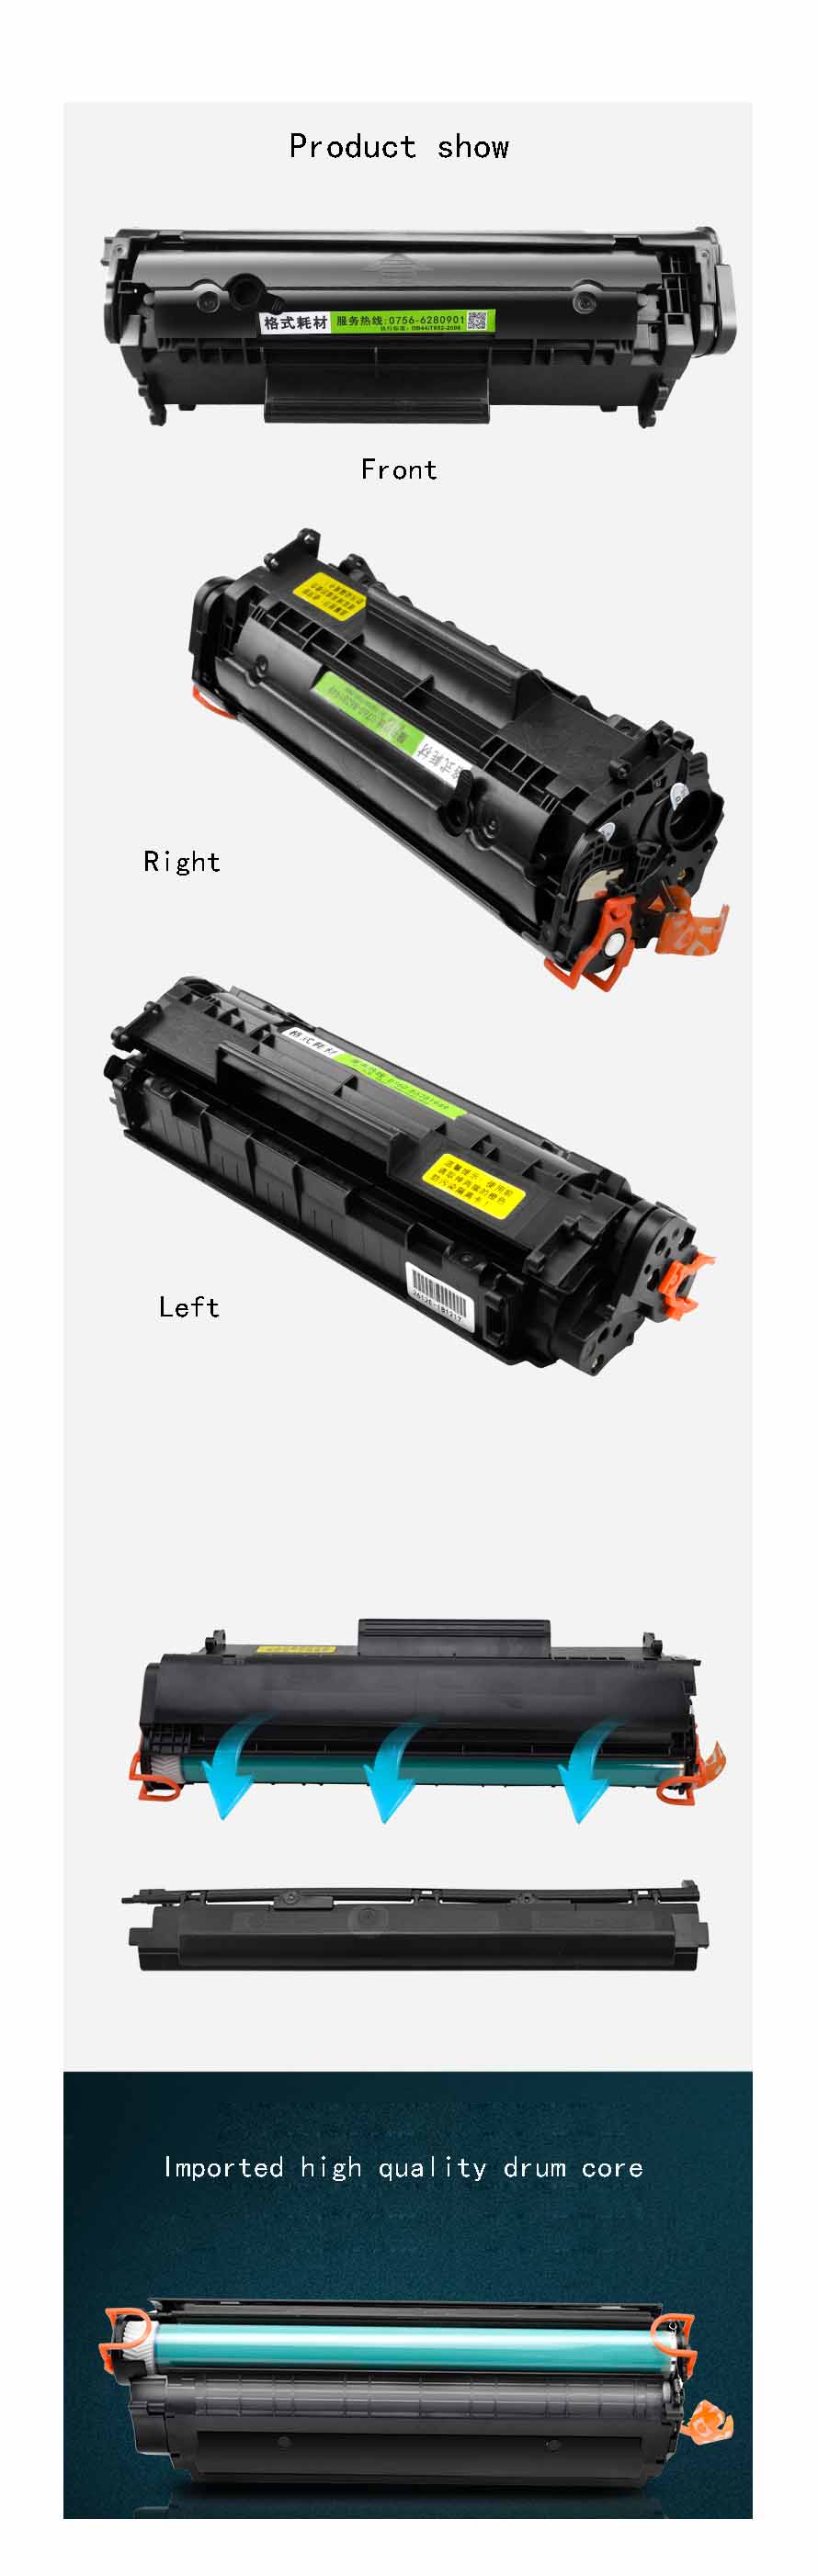 Toner-Cartridge-HP1020plus-M1005-Ink-Cartridge-1018-Toner-Cartridge-Suitable-For-HP-Original-Printer-1459766-1